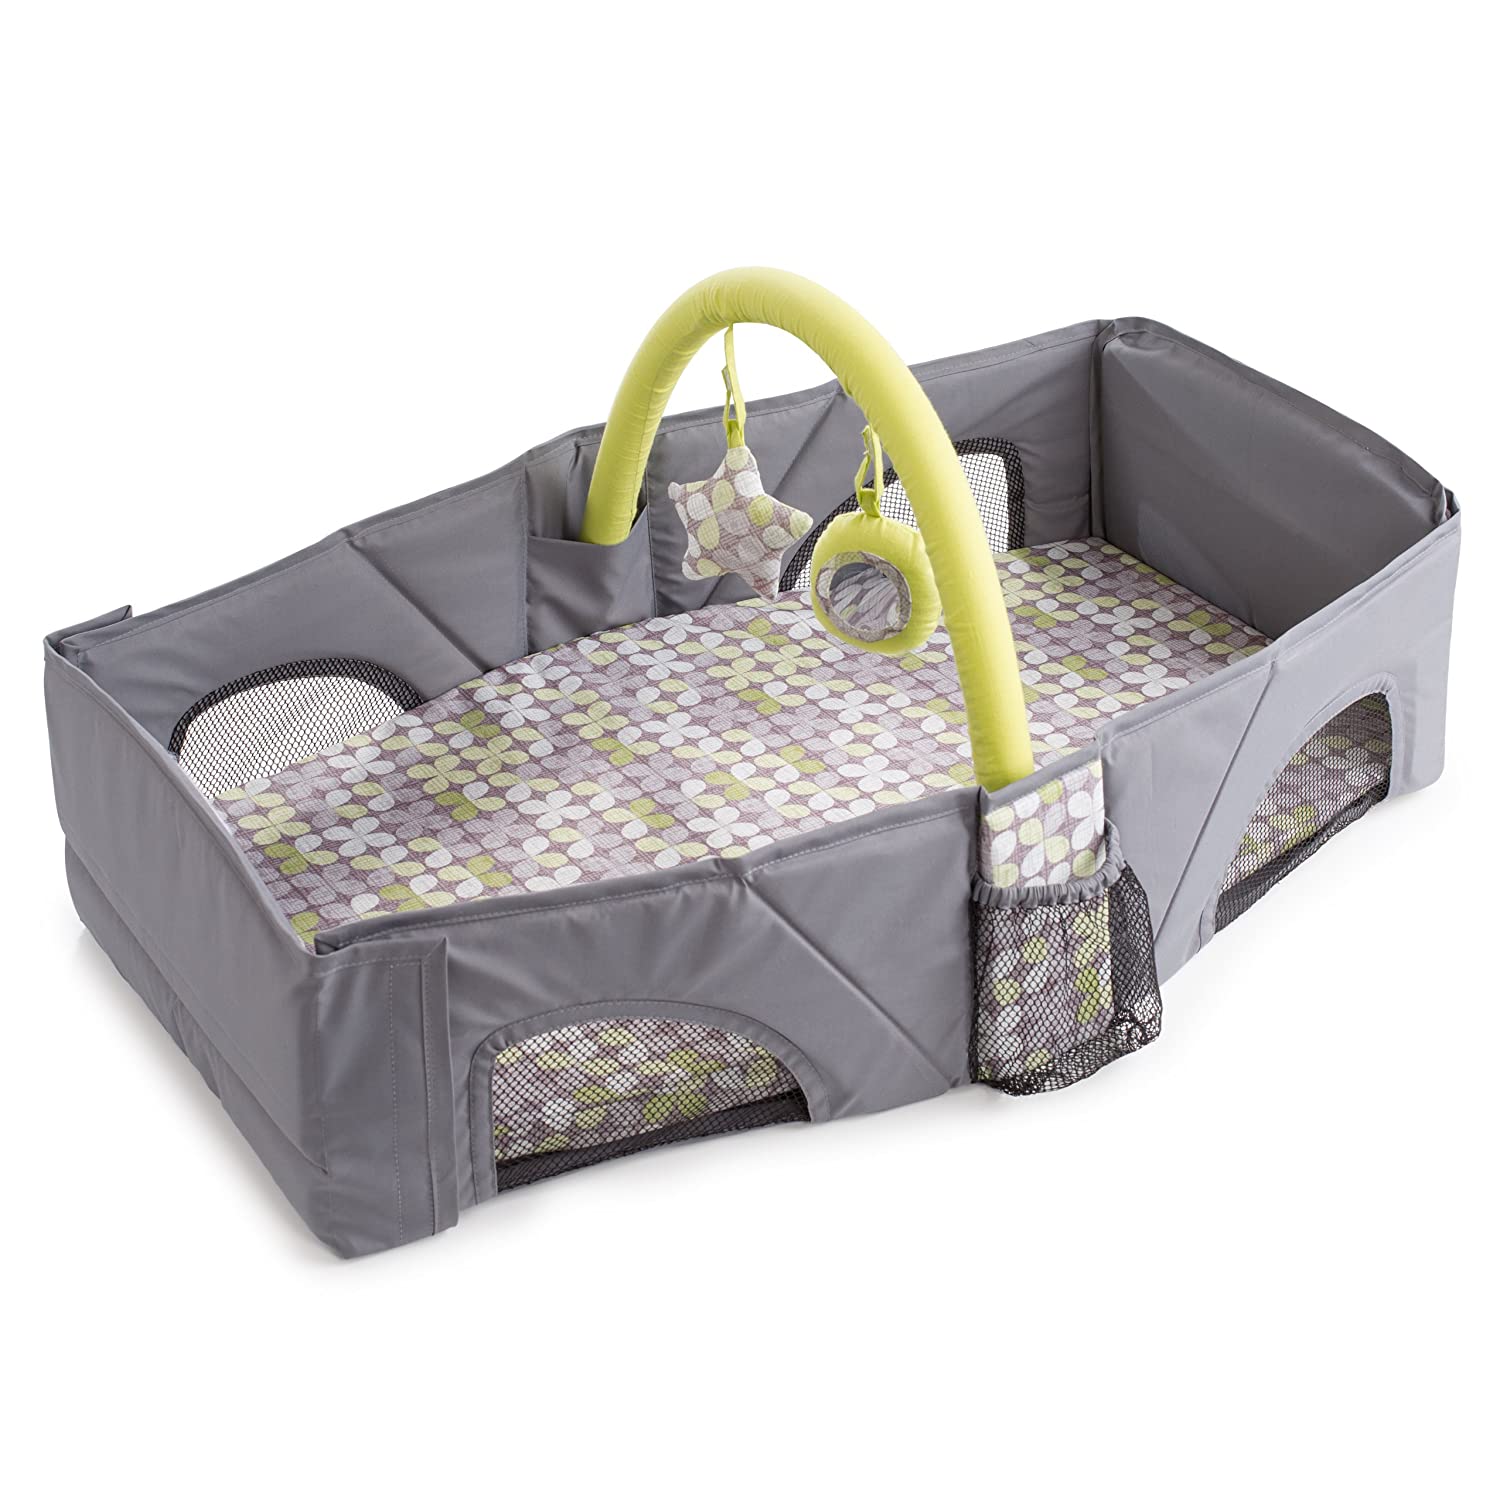 Summer Infant Travel Bed - Travel Bed for Toddler